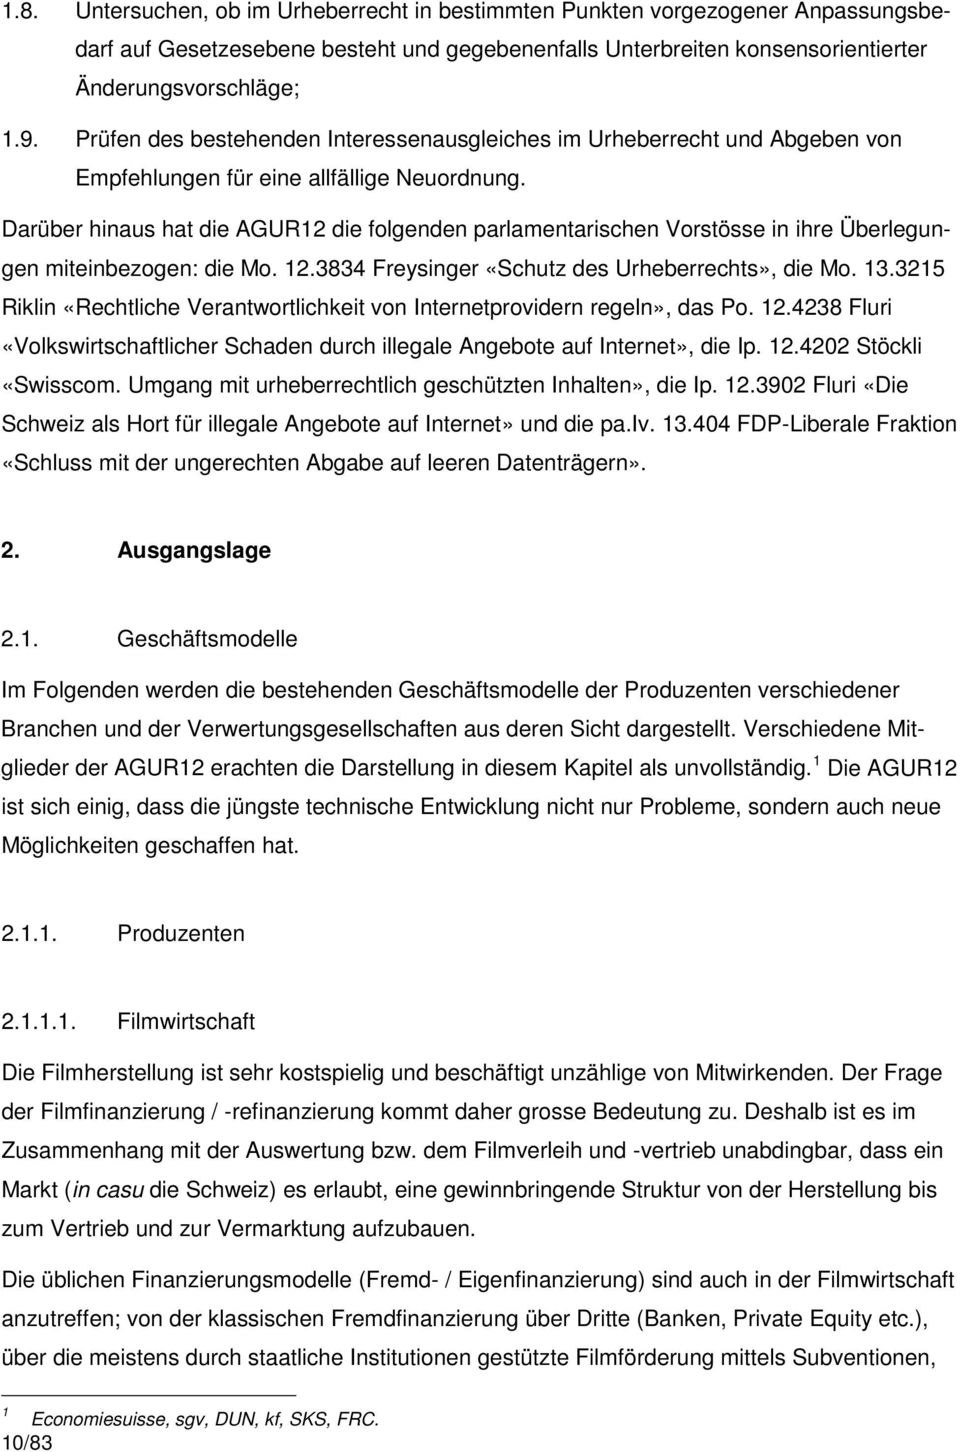 Darüber hinaus hat die AGUR12 die folgenden parlamentarischen Vorstösse in ihre Überlegungen miteinbezogen: die Mo. 12.3834 Freysinger «Schutz des Urheberrechts», die Mo. 13.